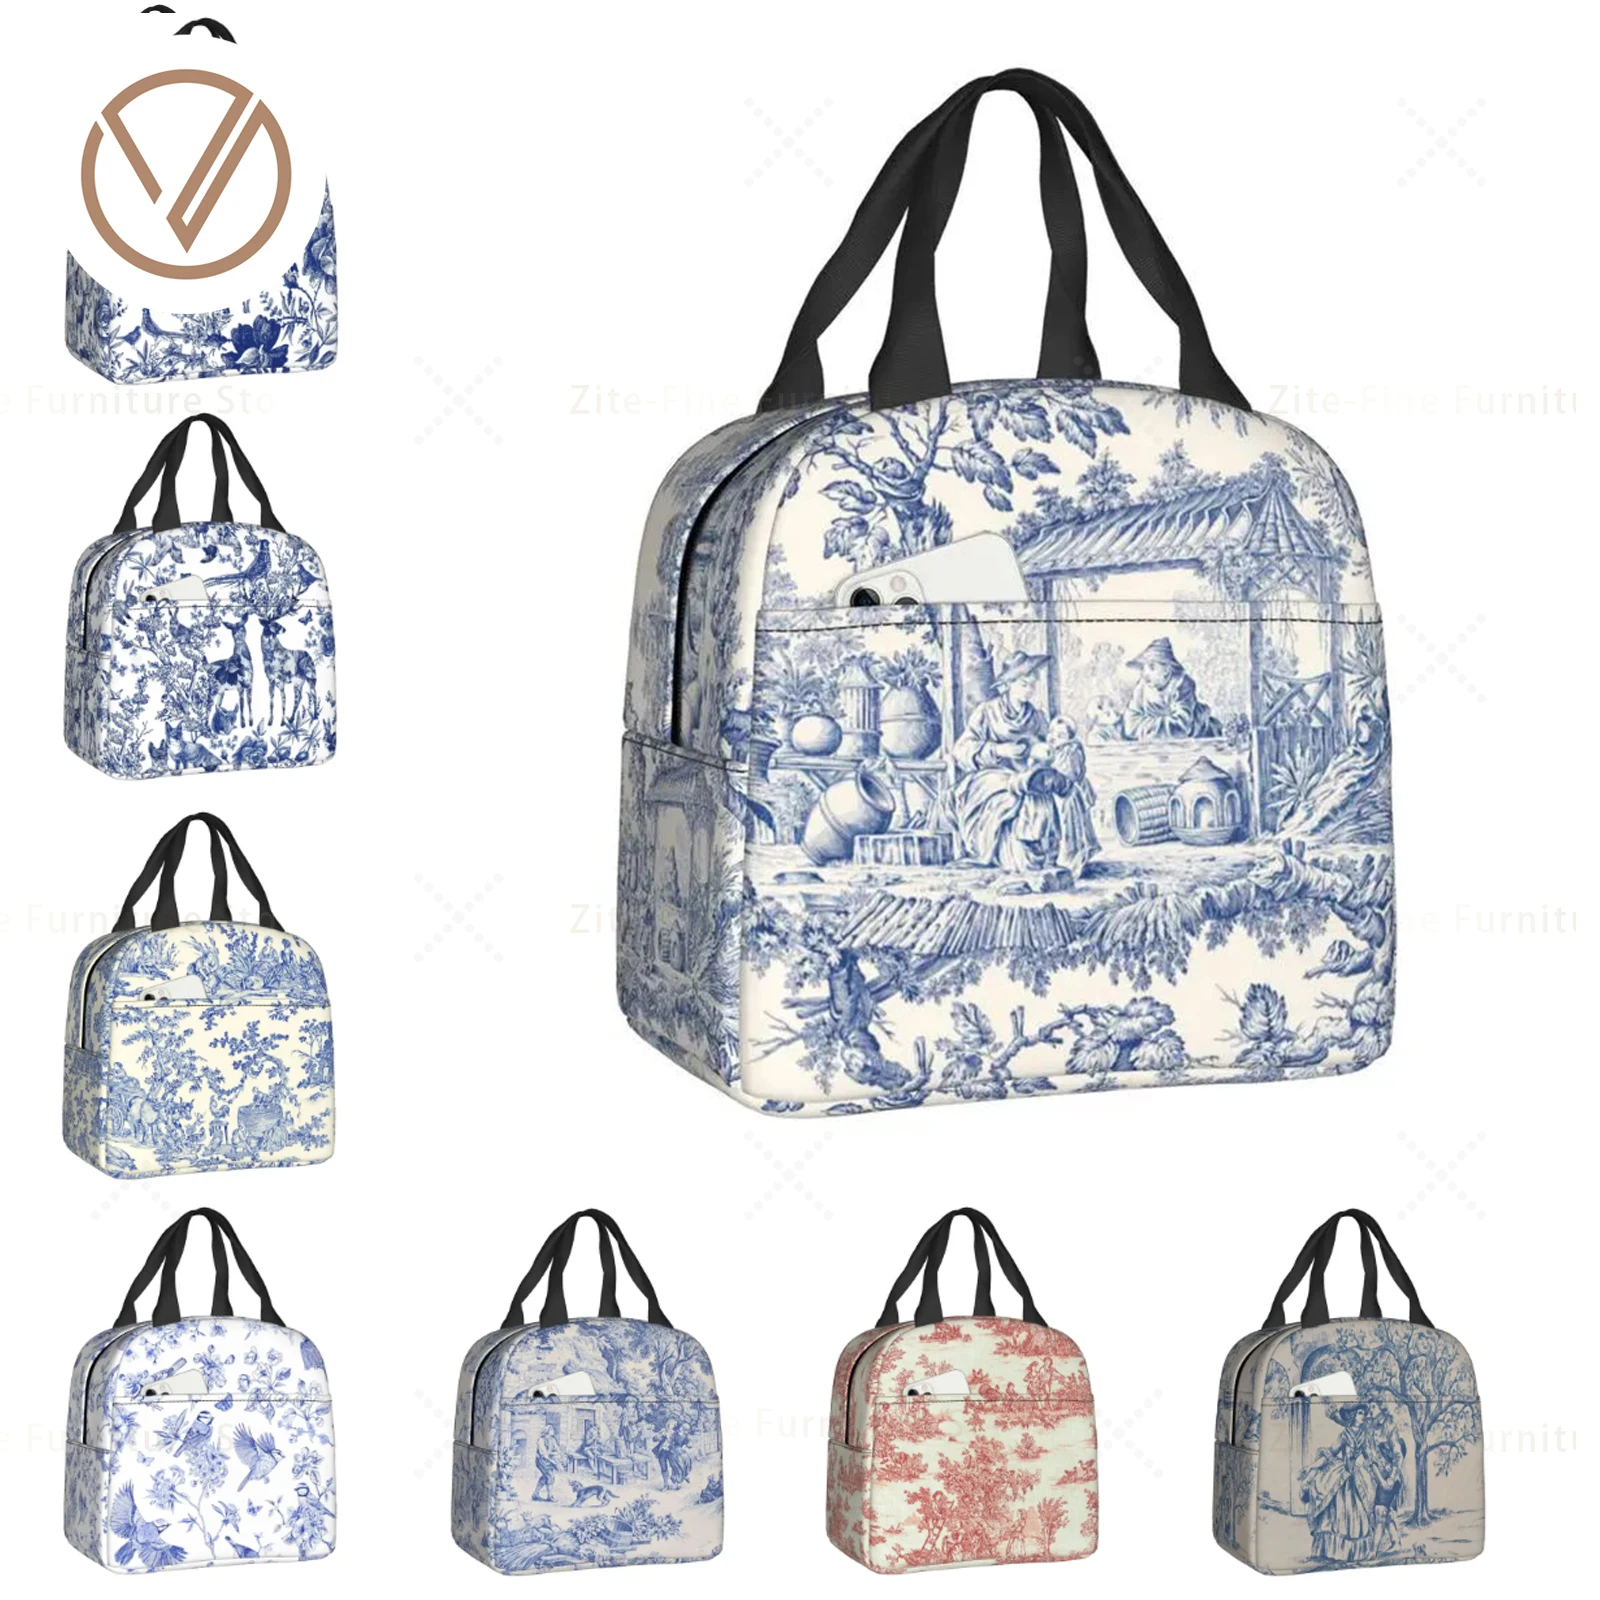 Toile De Jouy Темно-синий с рисунком, термоизолированные сумки для ланча, женская сумка для ланча для пикника на открытом воздухе, коробка для Бенто с едой